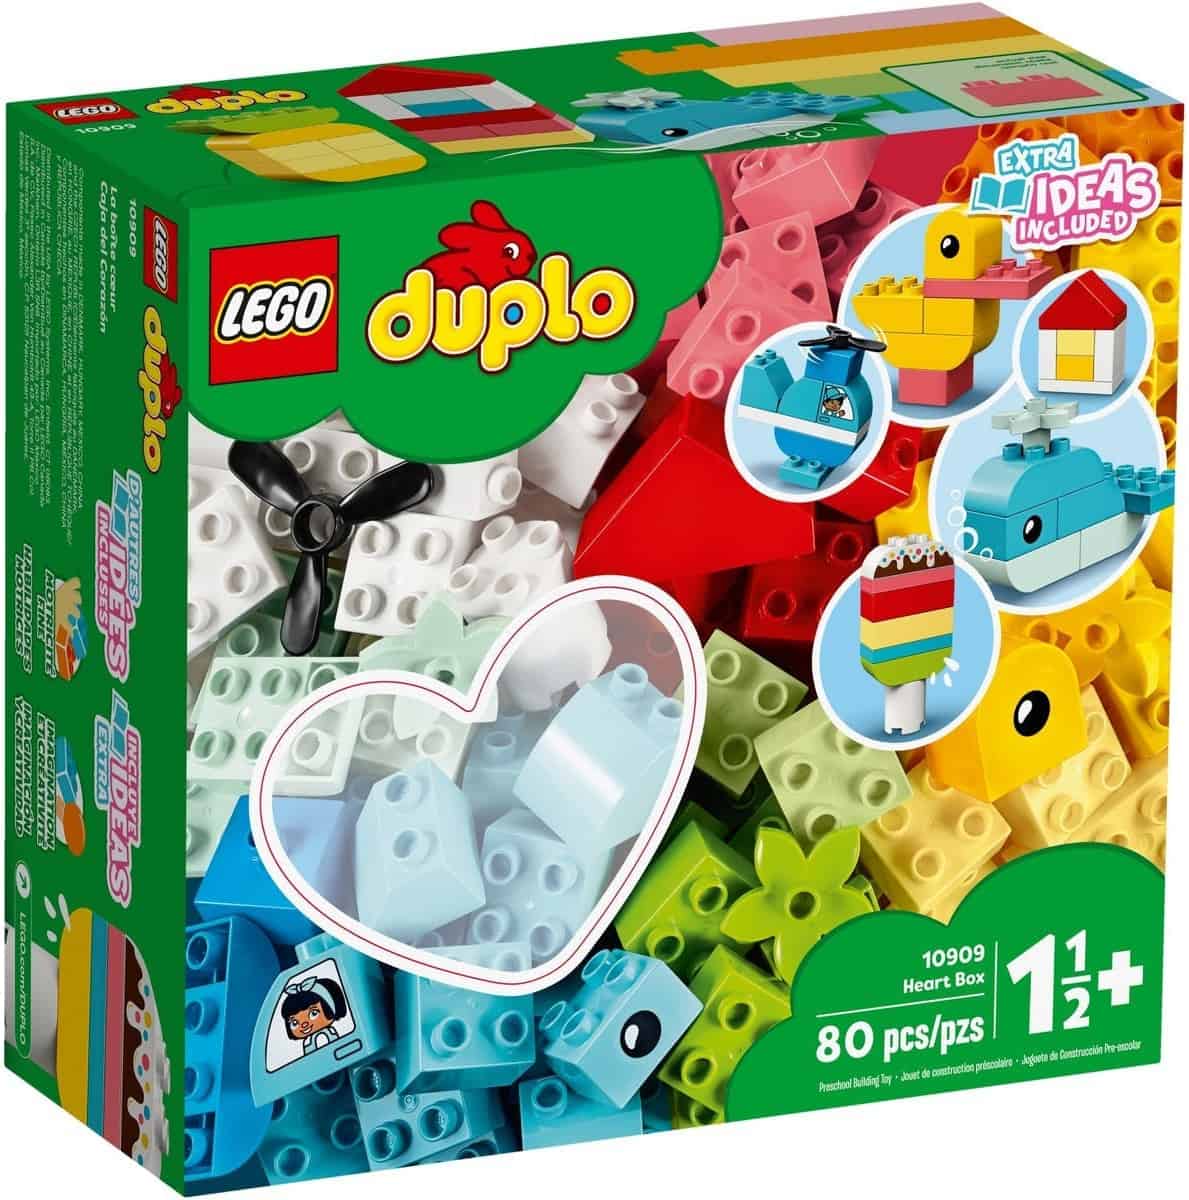 LEGO 10909 DUPLO Mein erster Bauspaß für 10,55 € inkl. Prime Versand statt 15,63 €